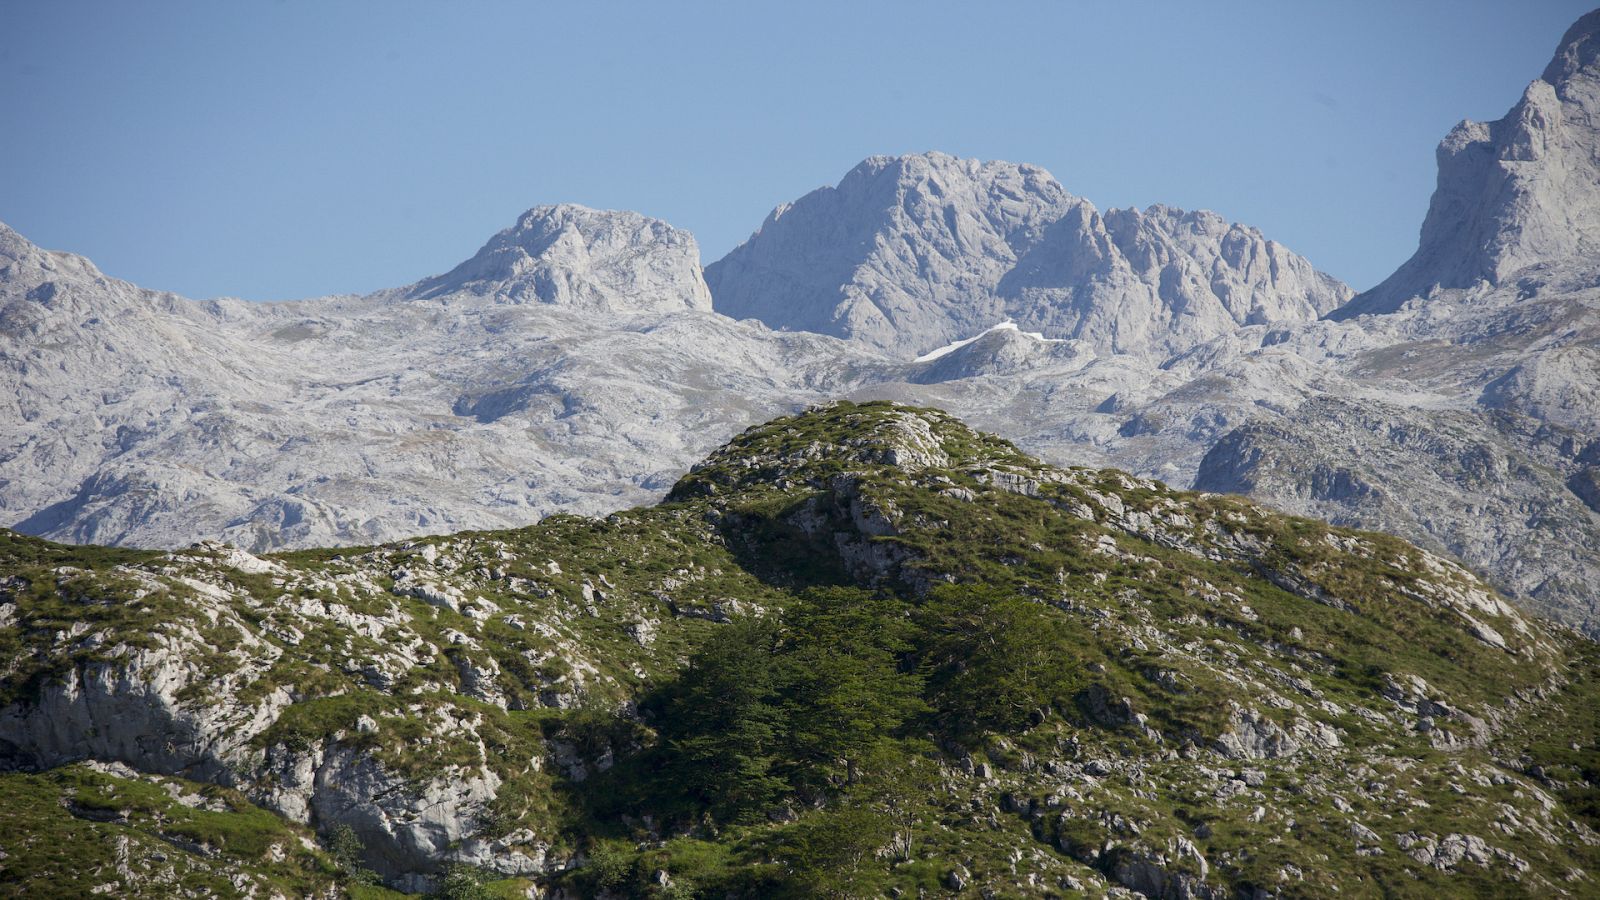 De parque en parque - Parque Nacional de Picos de Europa - Documental en RTVE